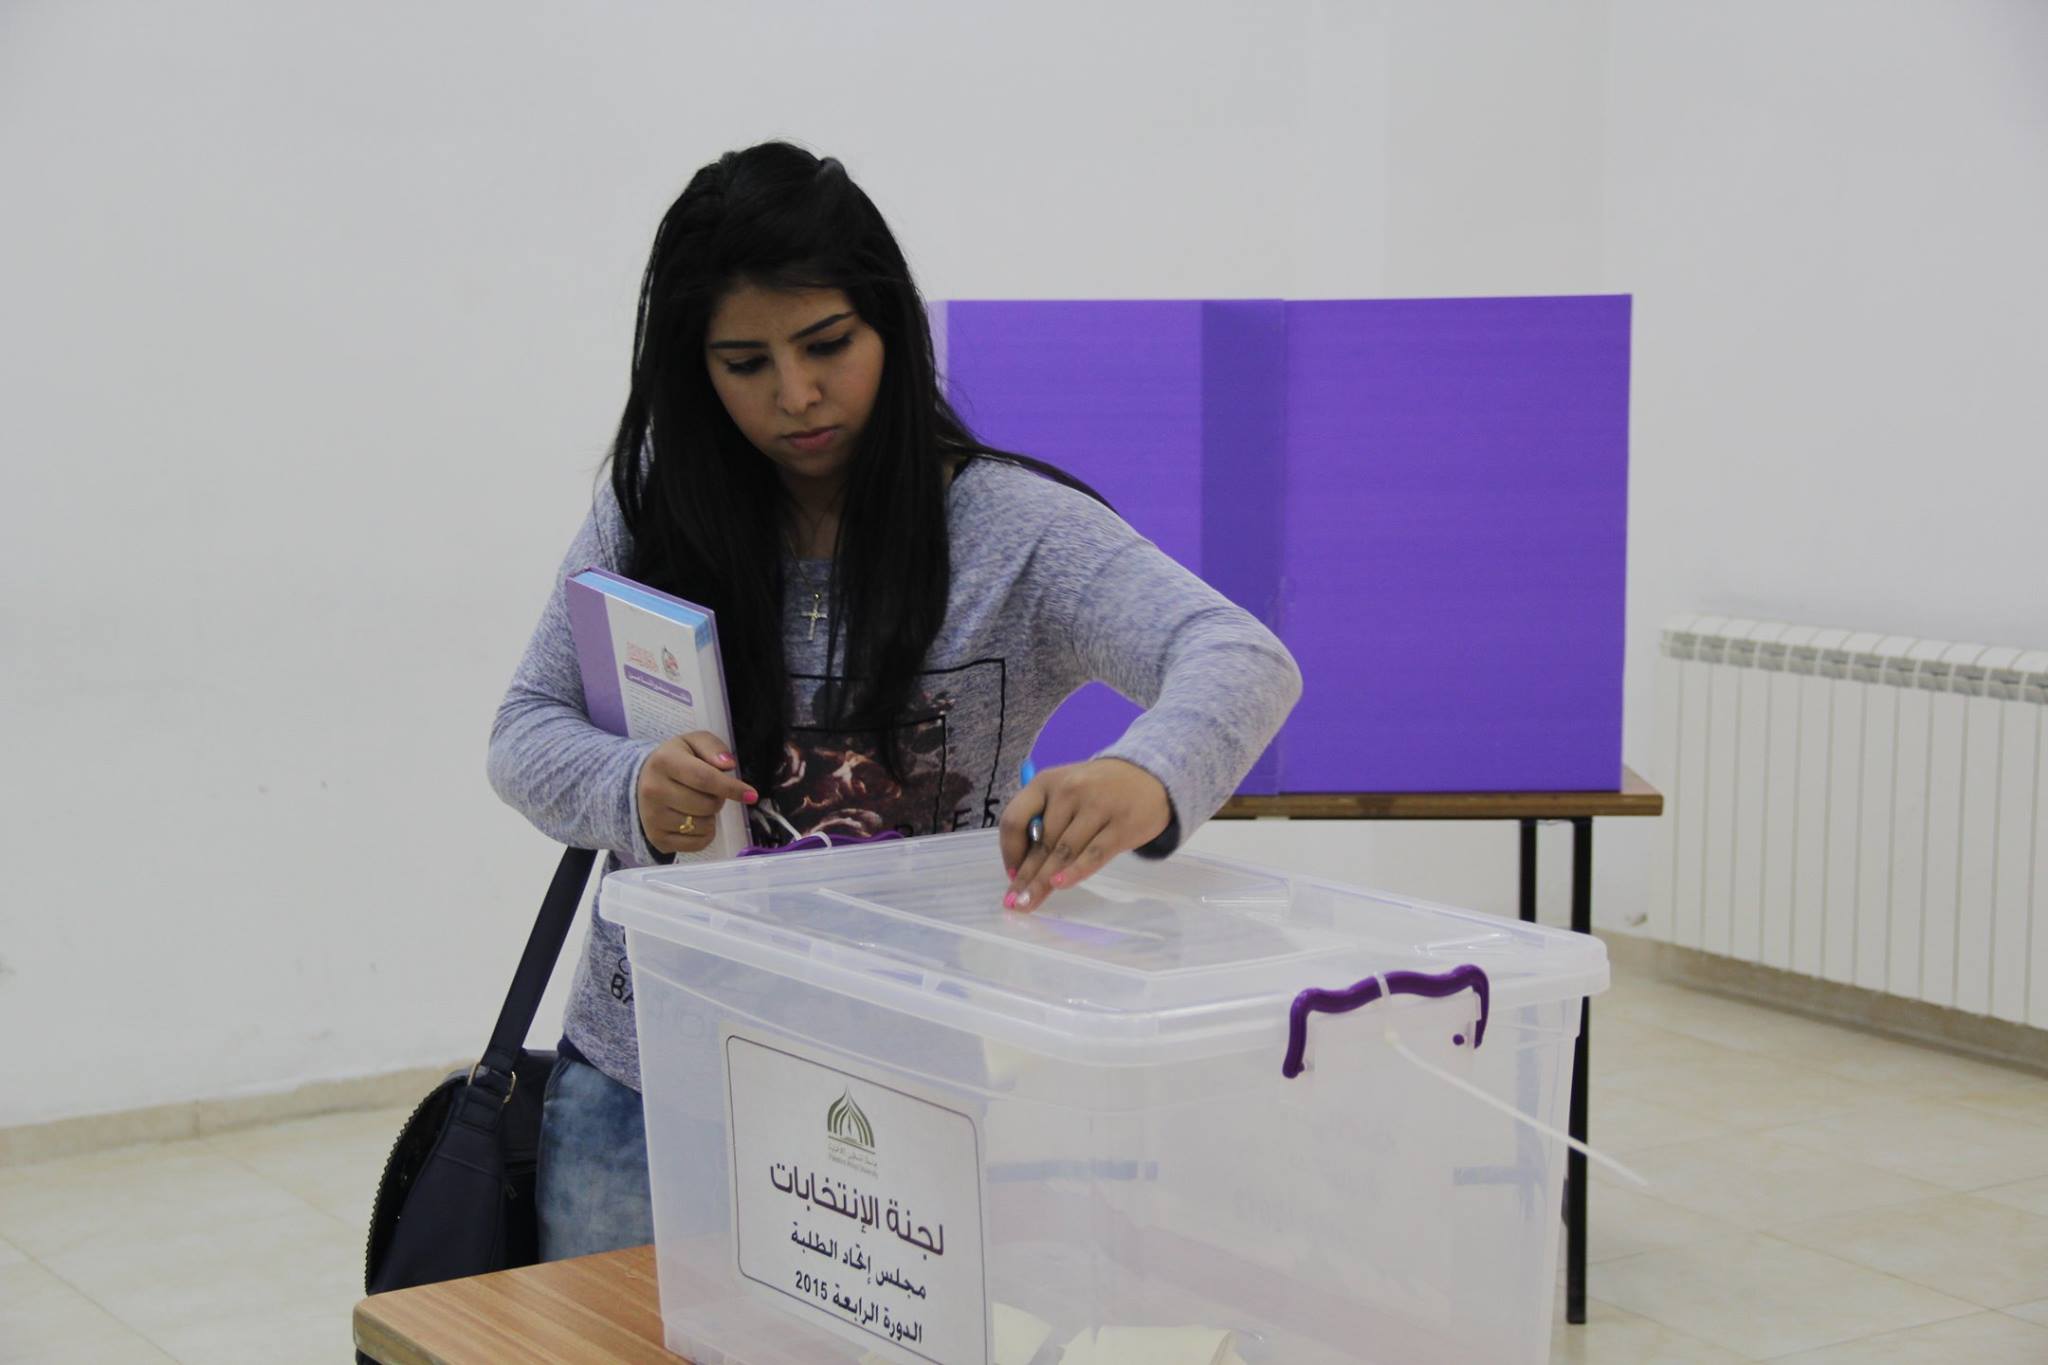 فتح تفوز بانتخابات مجلس طلبة كلية فلسطين